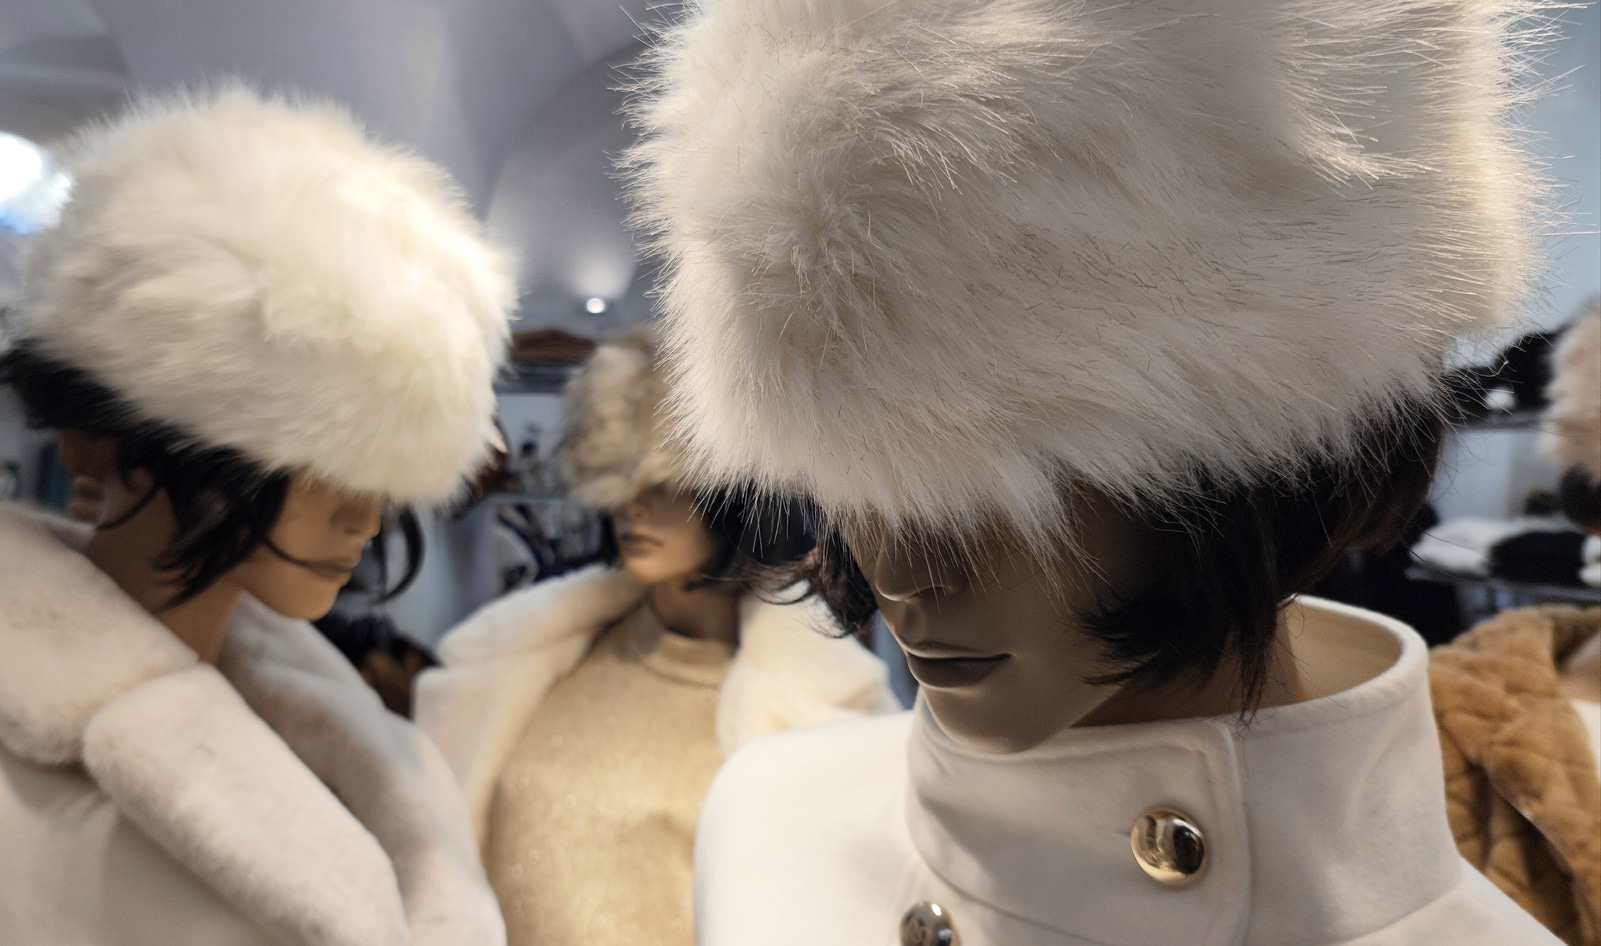 New Era of High Fashion: Italy Votes to Shut Down Fur Farming&nbsp;